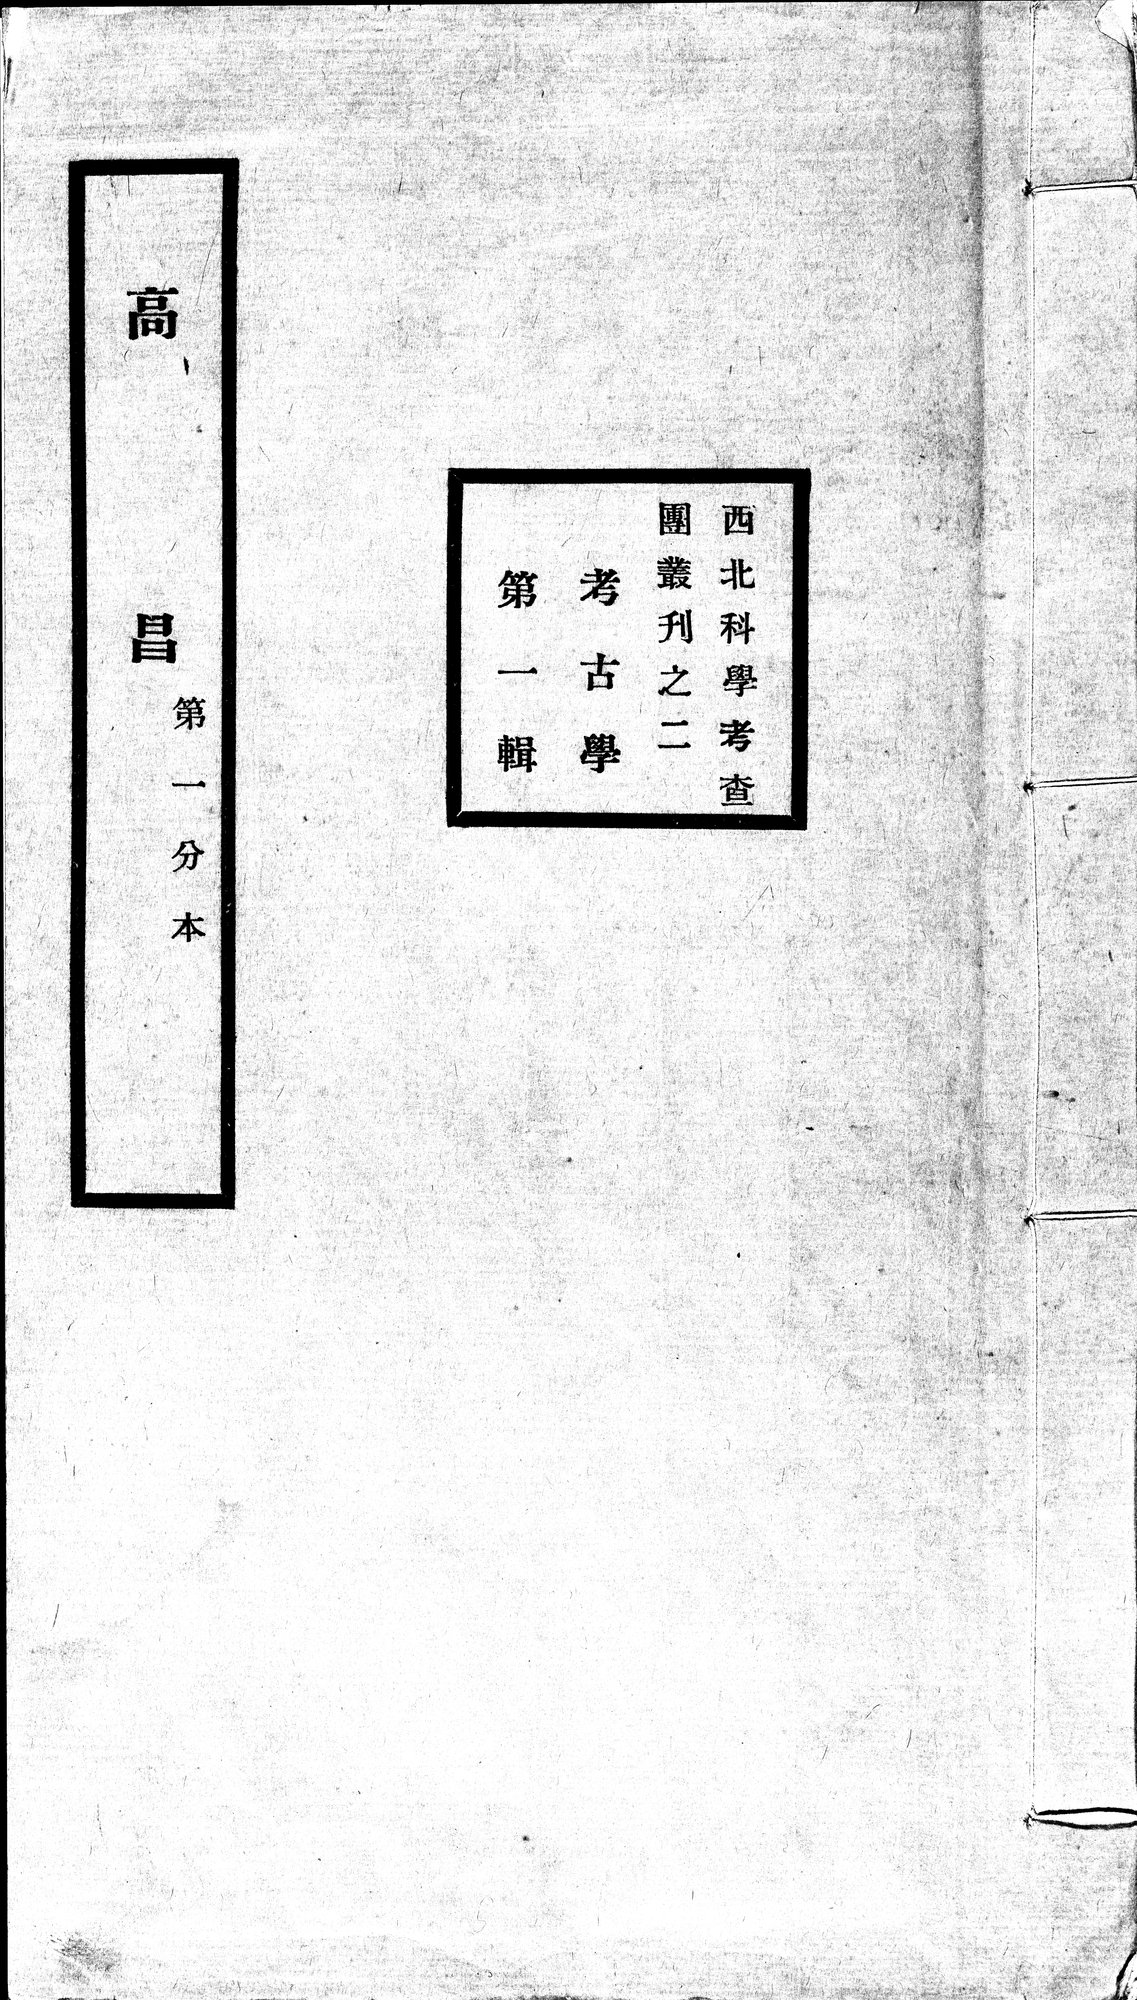 高昌 : vol.1 / Page 1 (Grayscale High Resolution Image)